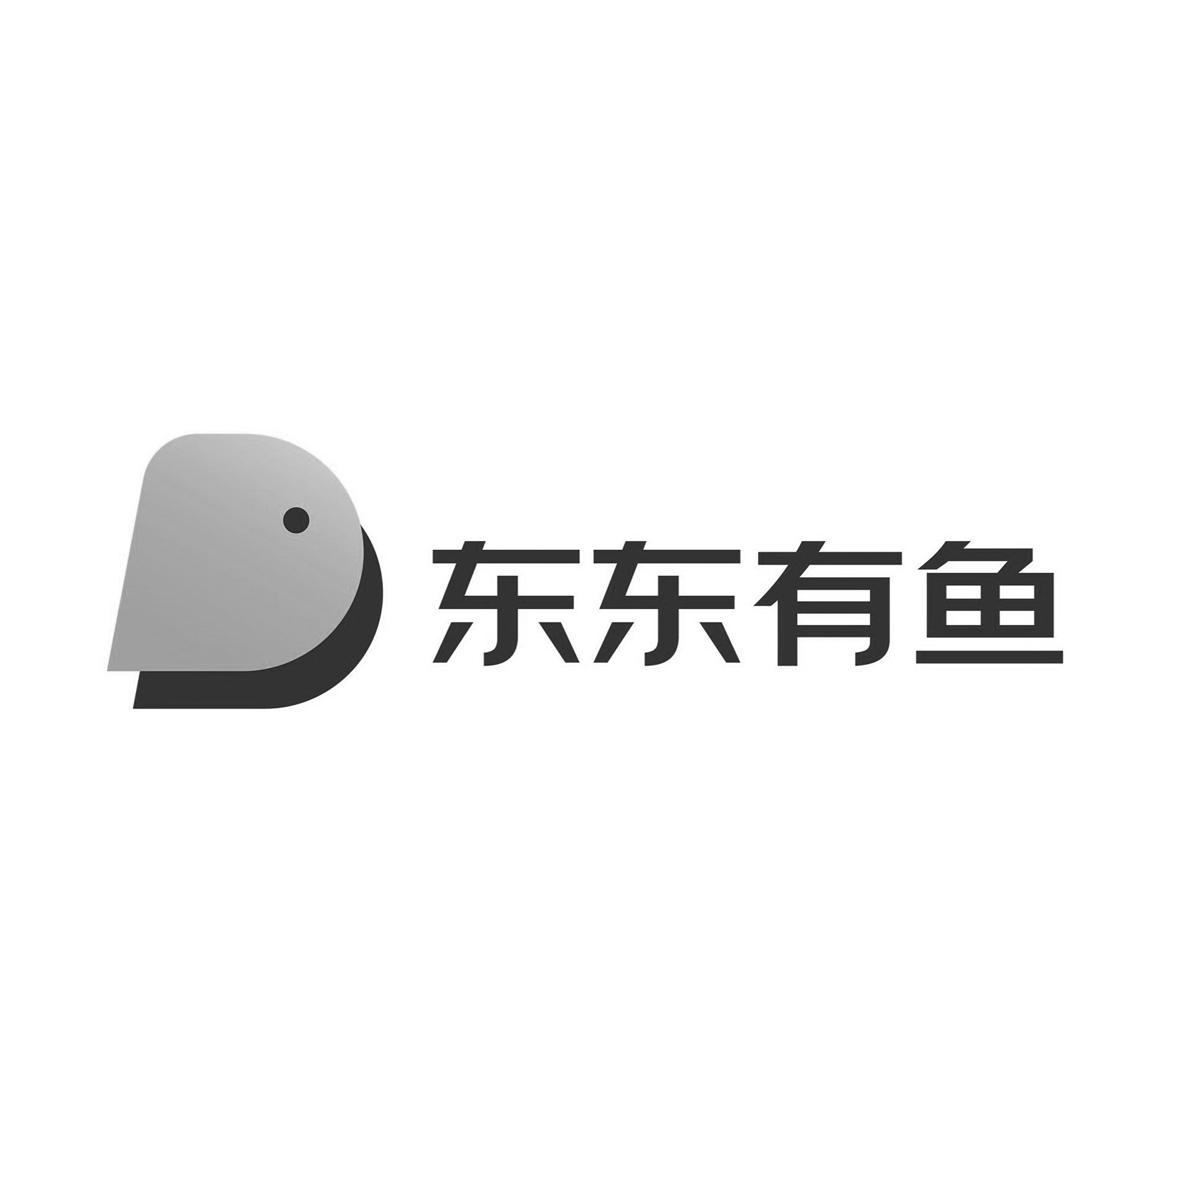 商标文字东东有鱼商标号 49272868,商标申请人京东科技控股股份